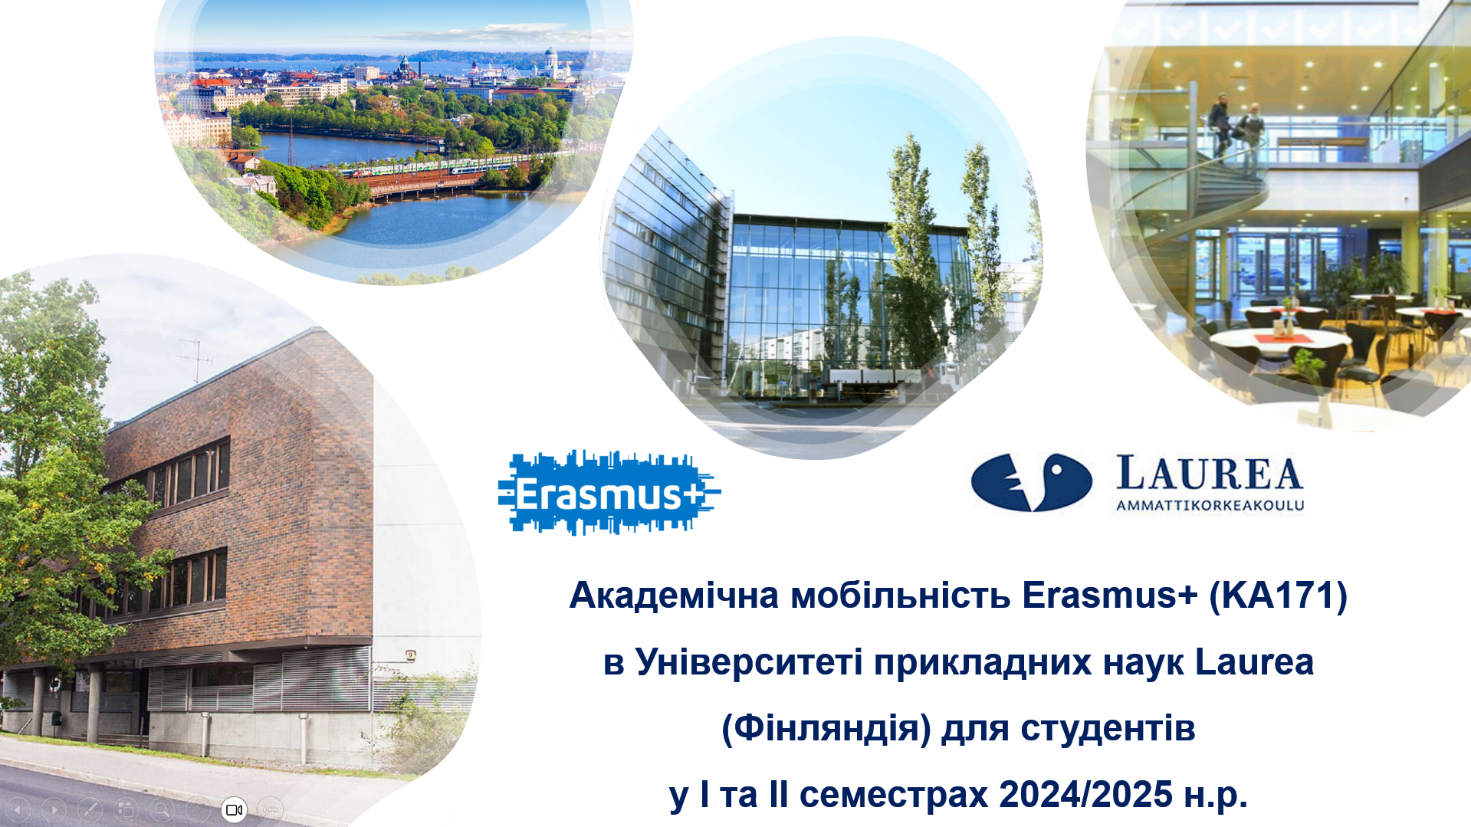 Університет прикладних наук Laurea запрошує студенток взяти участь у програмі кредитної академічної мобільності Erasmus+ в Фінляндії